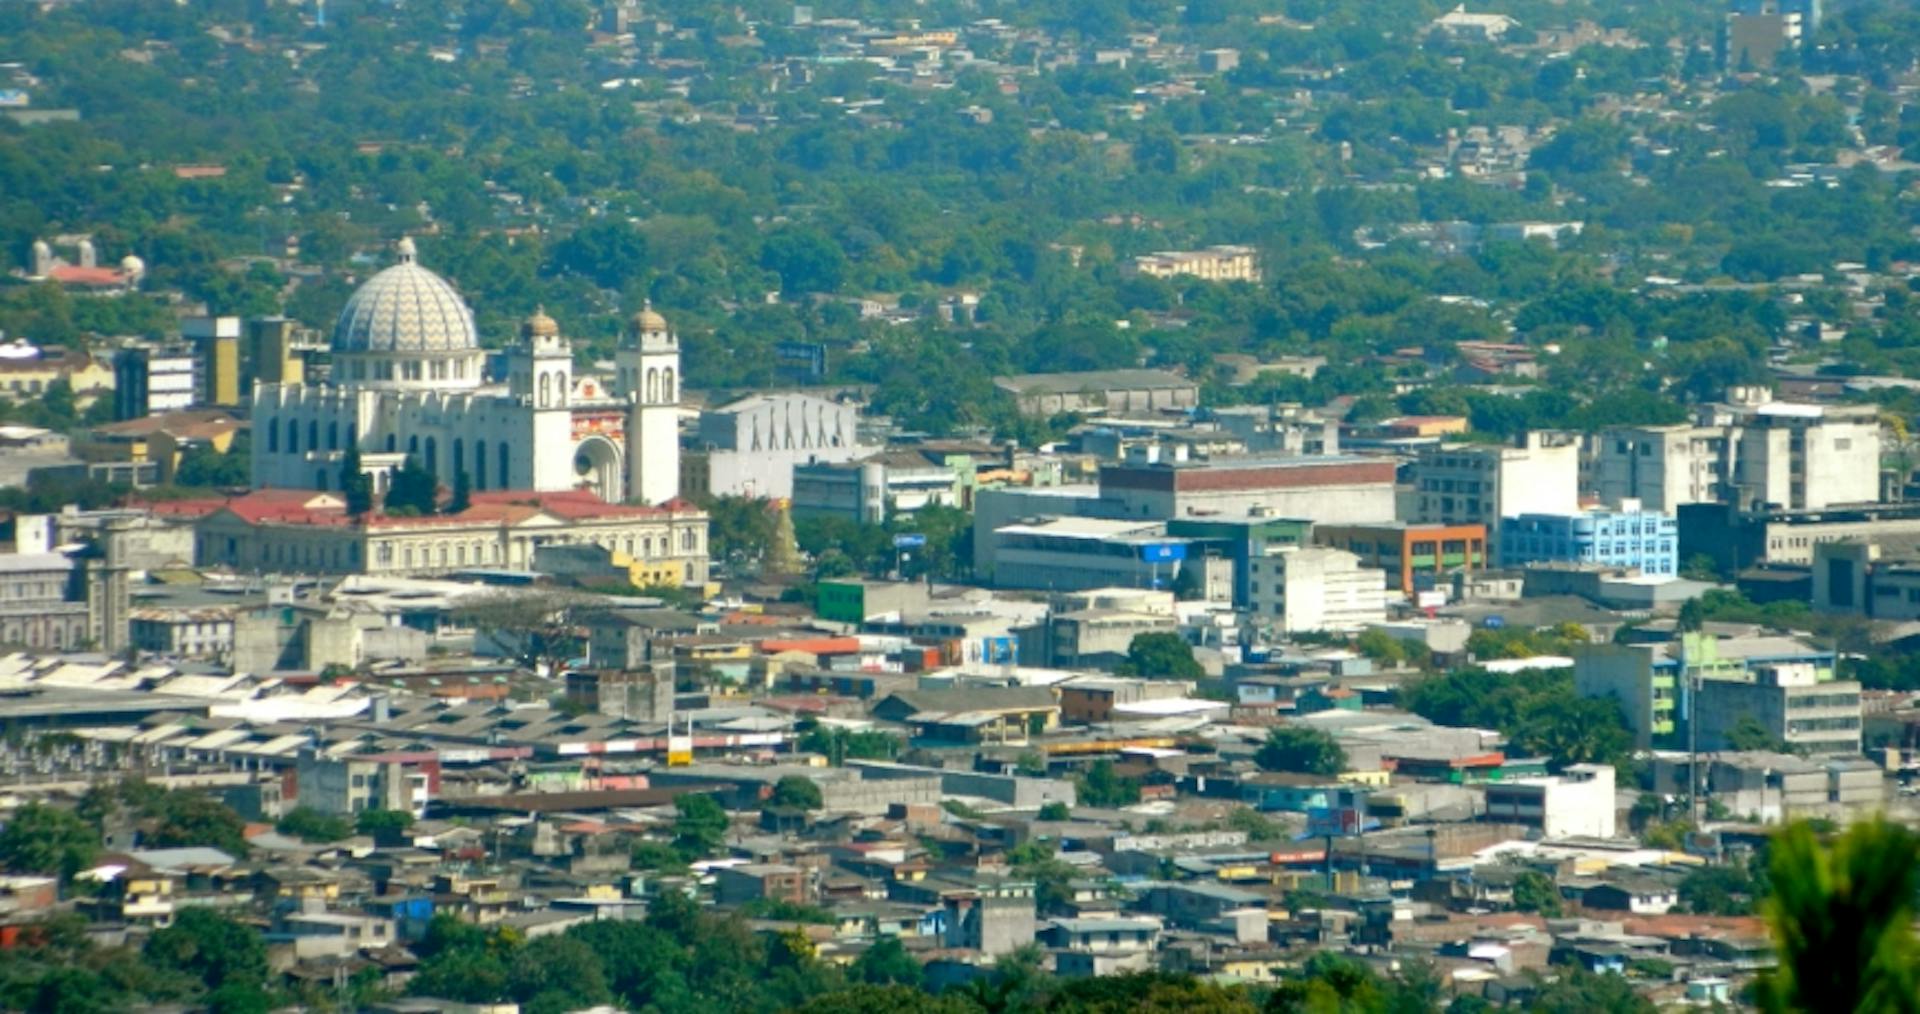 Historisches Zentrum von San Salvador. Bild von Maranon68 / Wikimedia Commons